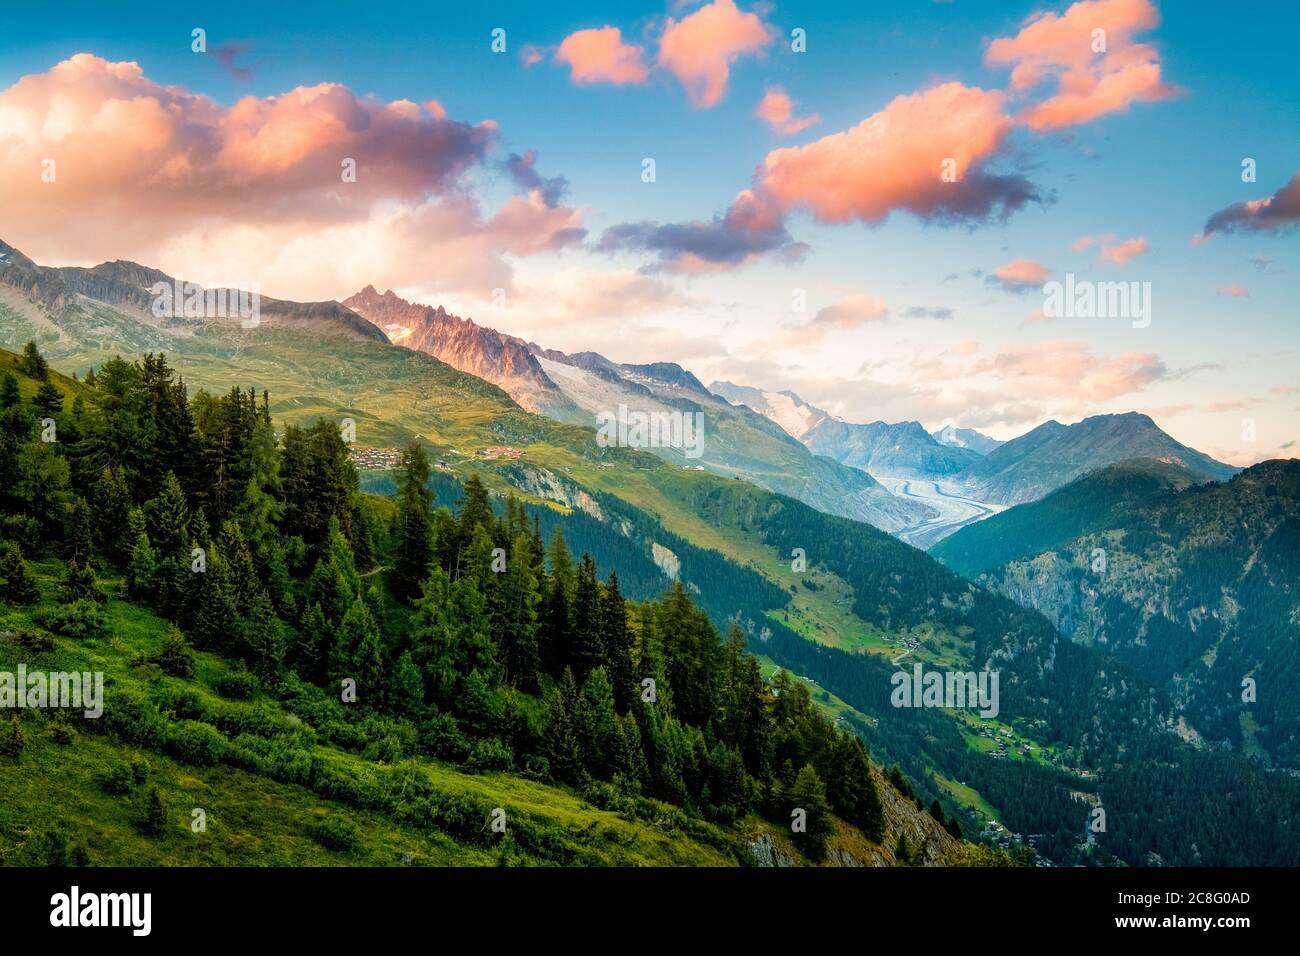 Geografia / viaggio, Svizzera, Vallese, l'ora magica trasforma le catene montuose intorno Belalp in qualcosa di magico, No-Turismo-Pubblicità-uso Foto Stock